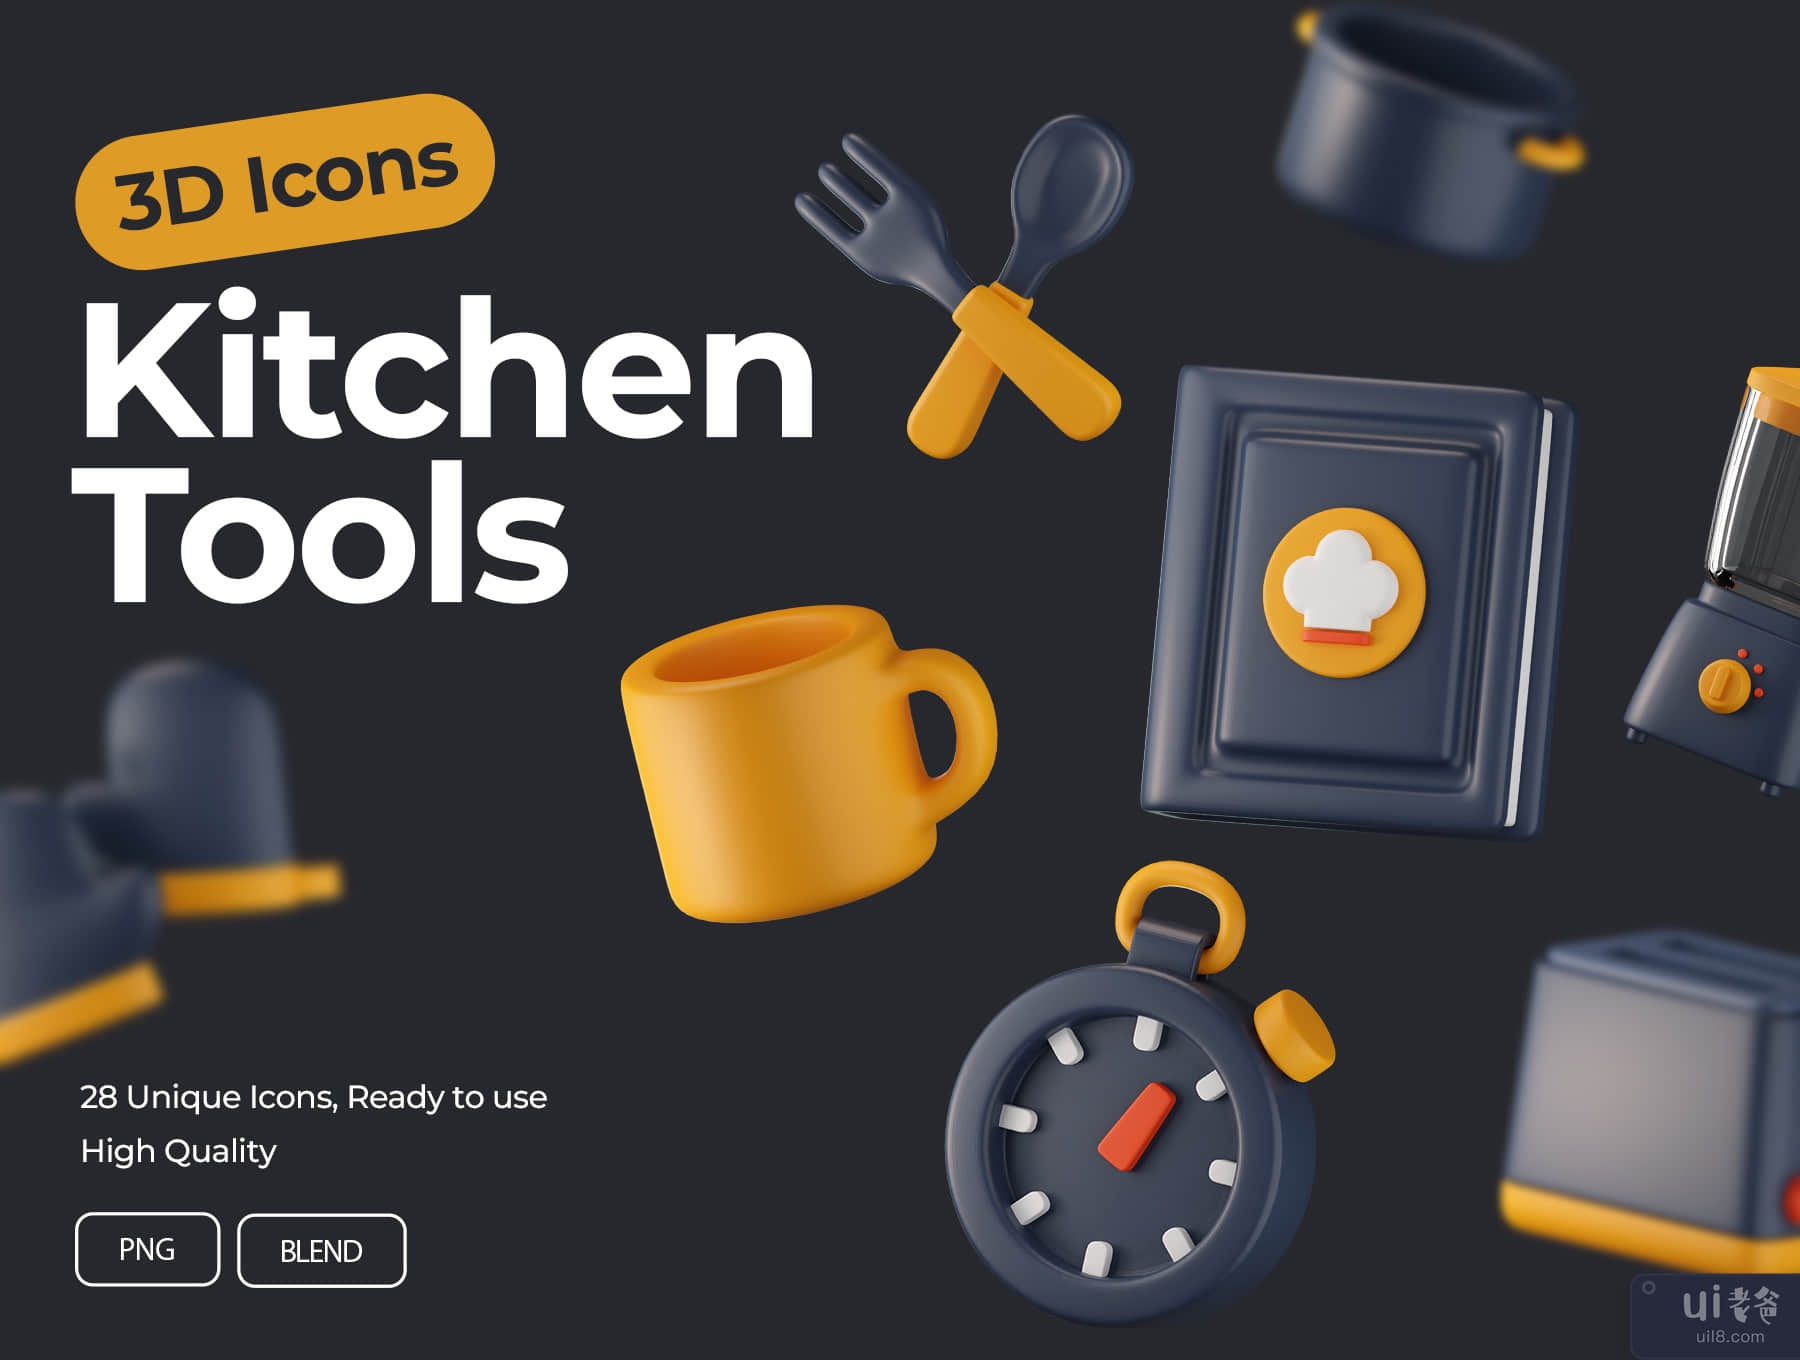 厨房工具 3D 图标 (Kitchen Tools 3D Icons)插图7